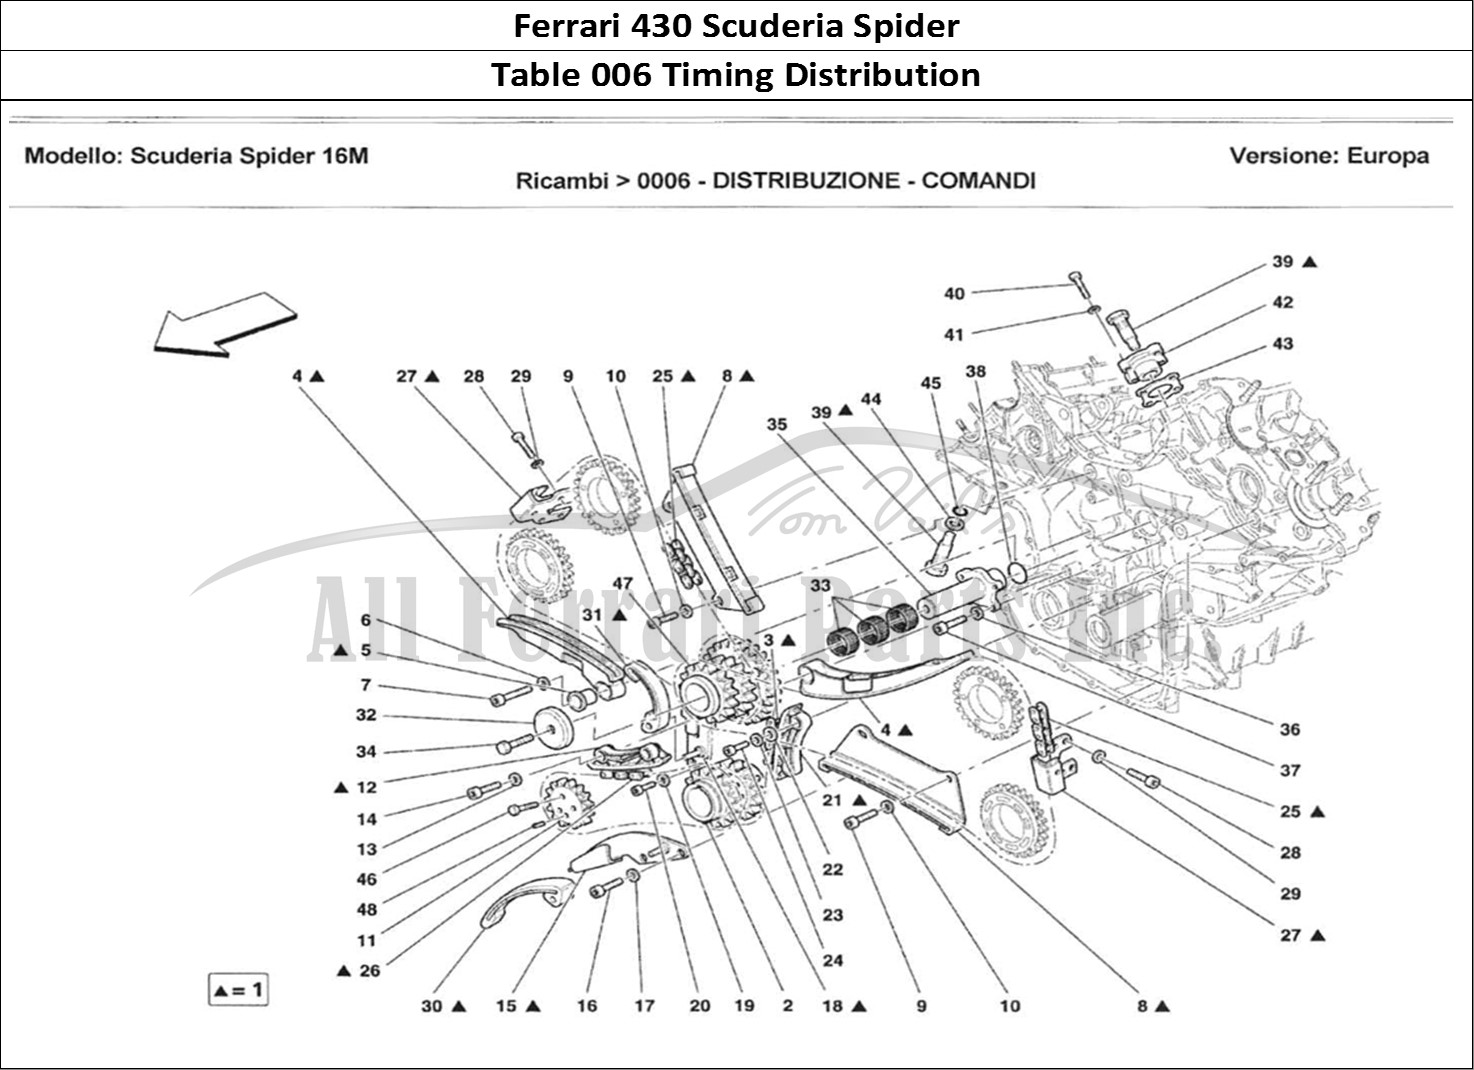 Ferrari Parts Ferrari 430 Scuderia Spider 16M Page 006 Distribuzione - Comandi